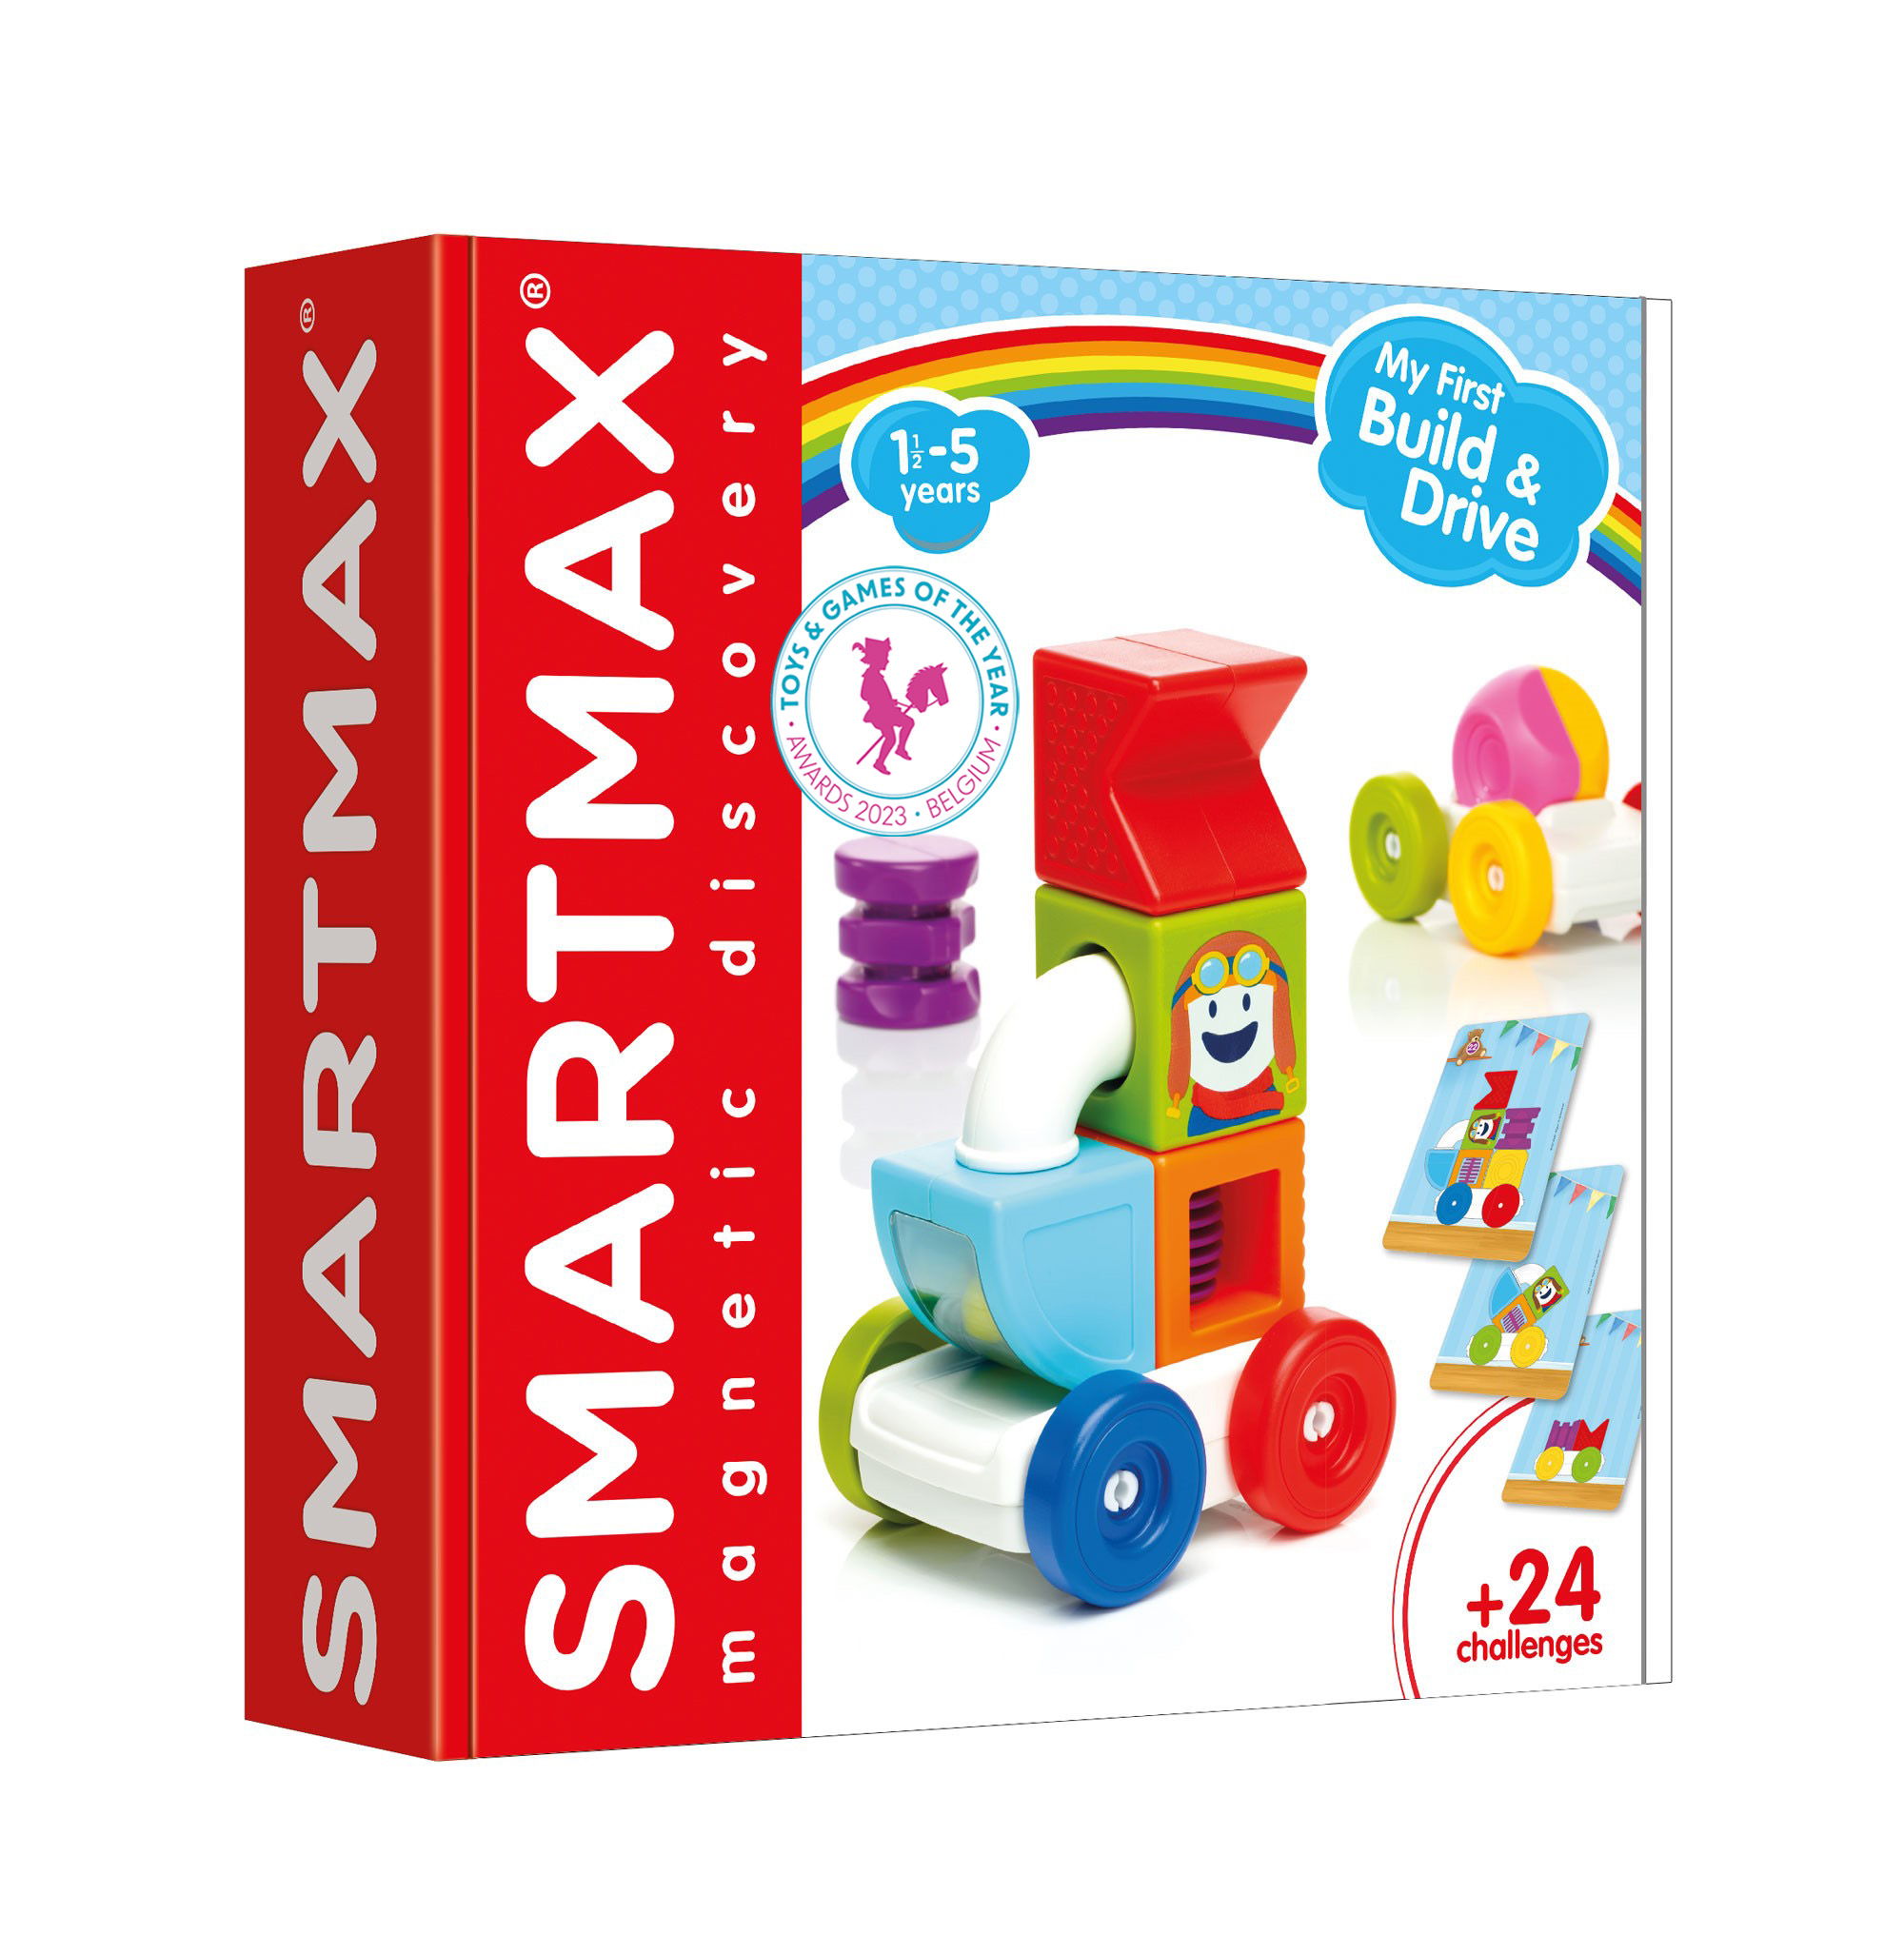 Smart Toys & Games remporte le prix du Jouet de l'Année Belgique dans la catégorie “Premier âge"